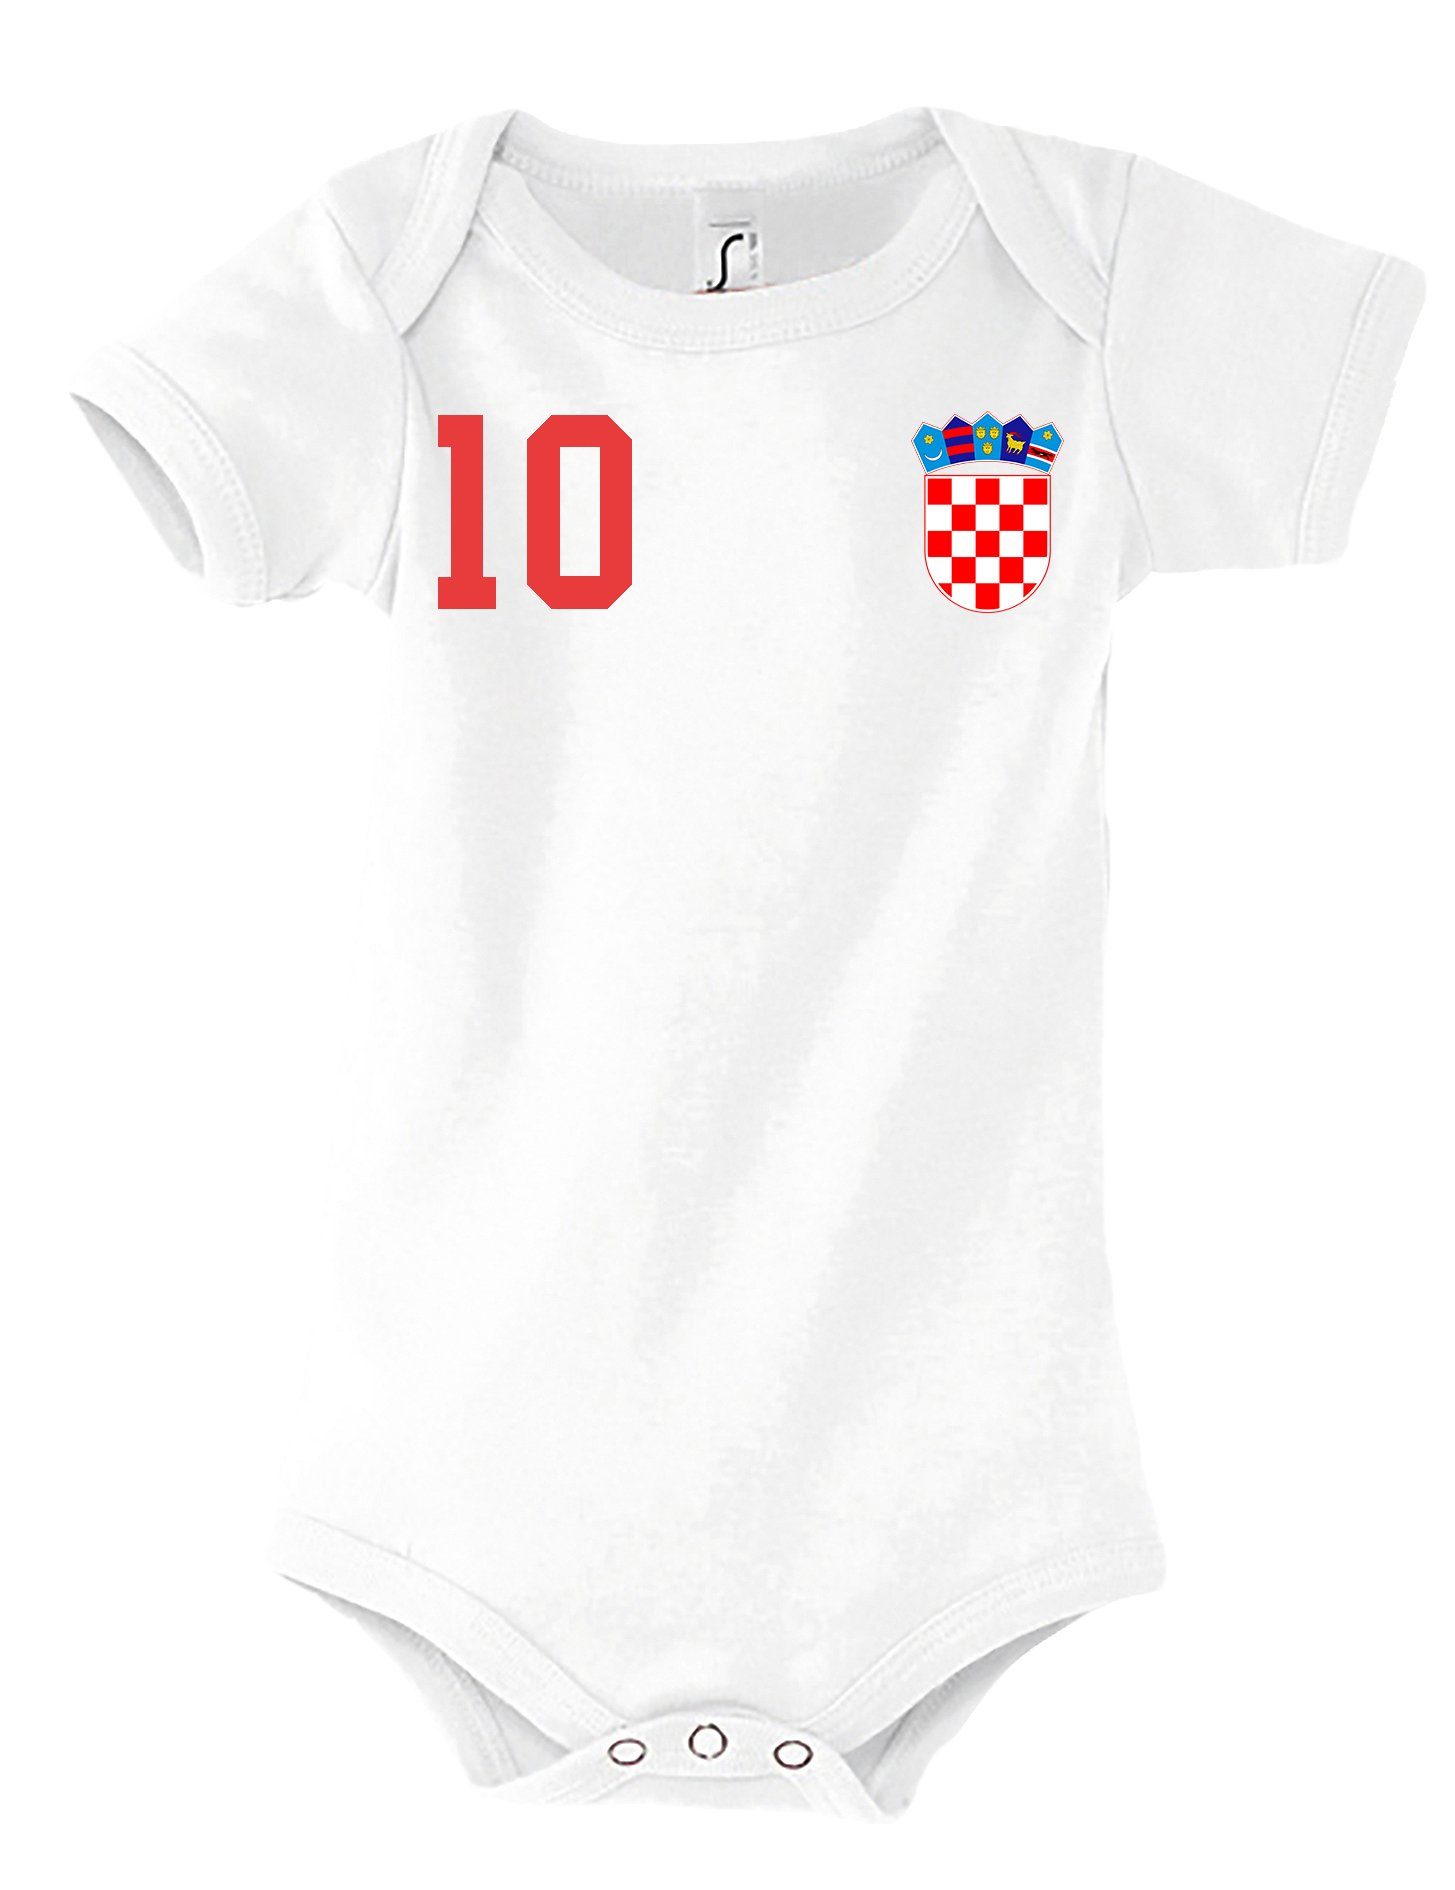 Youth Designz Kurzarmbody Kroatien Kinder Baby Body Strampler mit trendigem Motiv Weiß